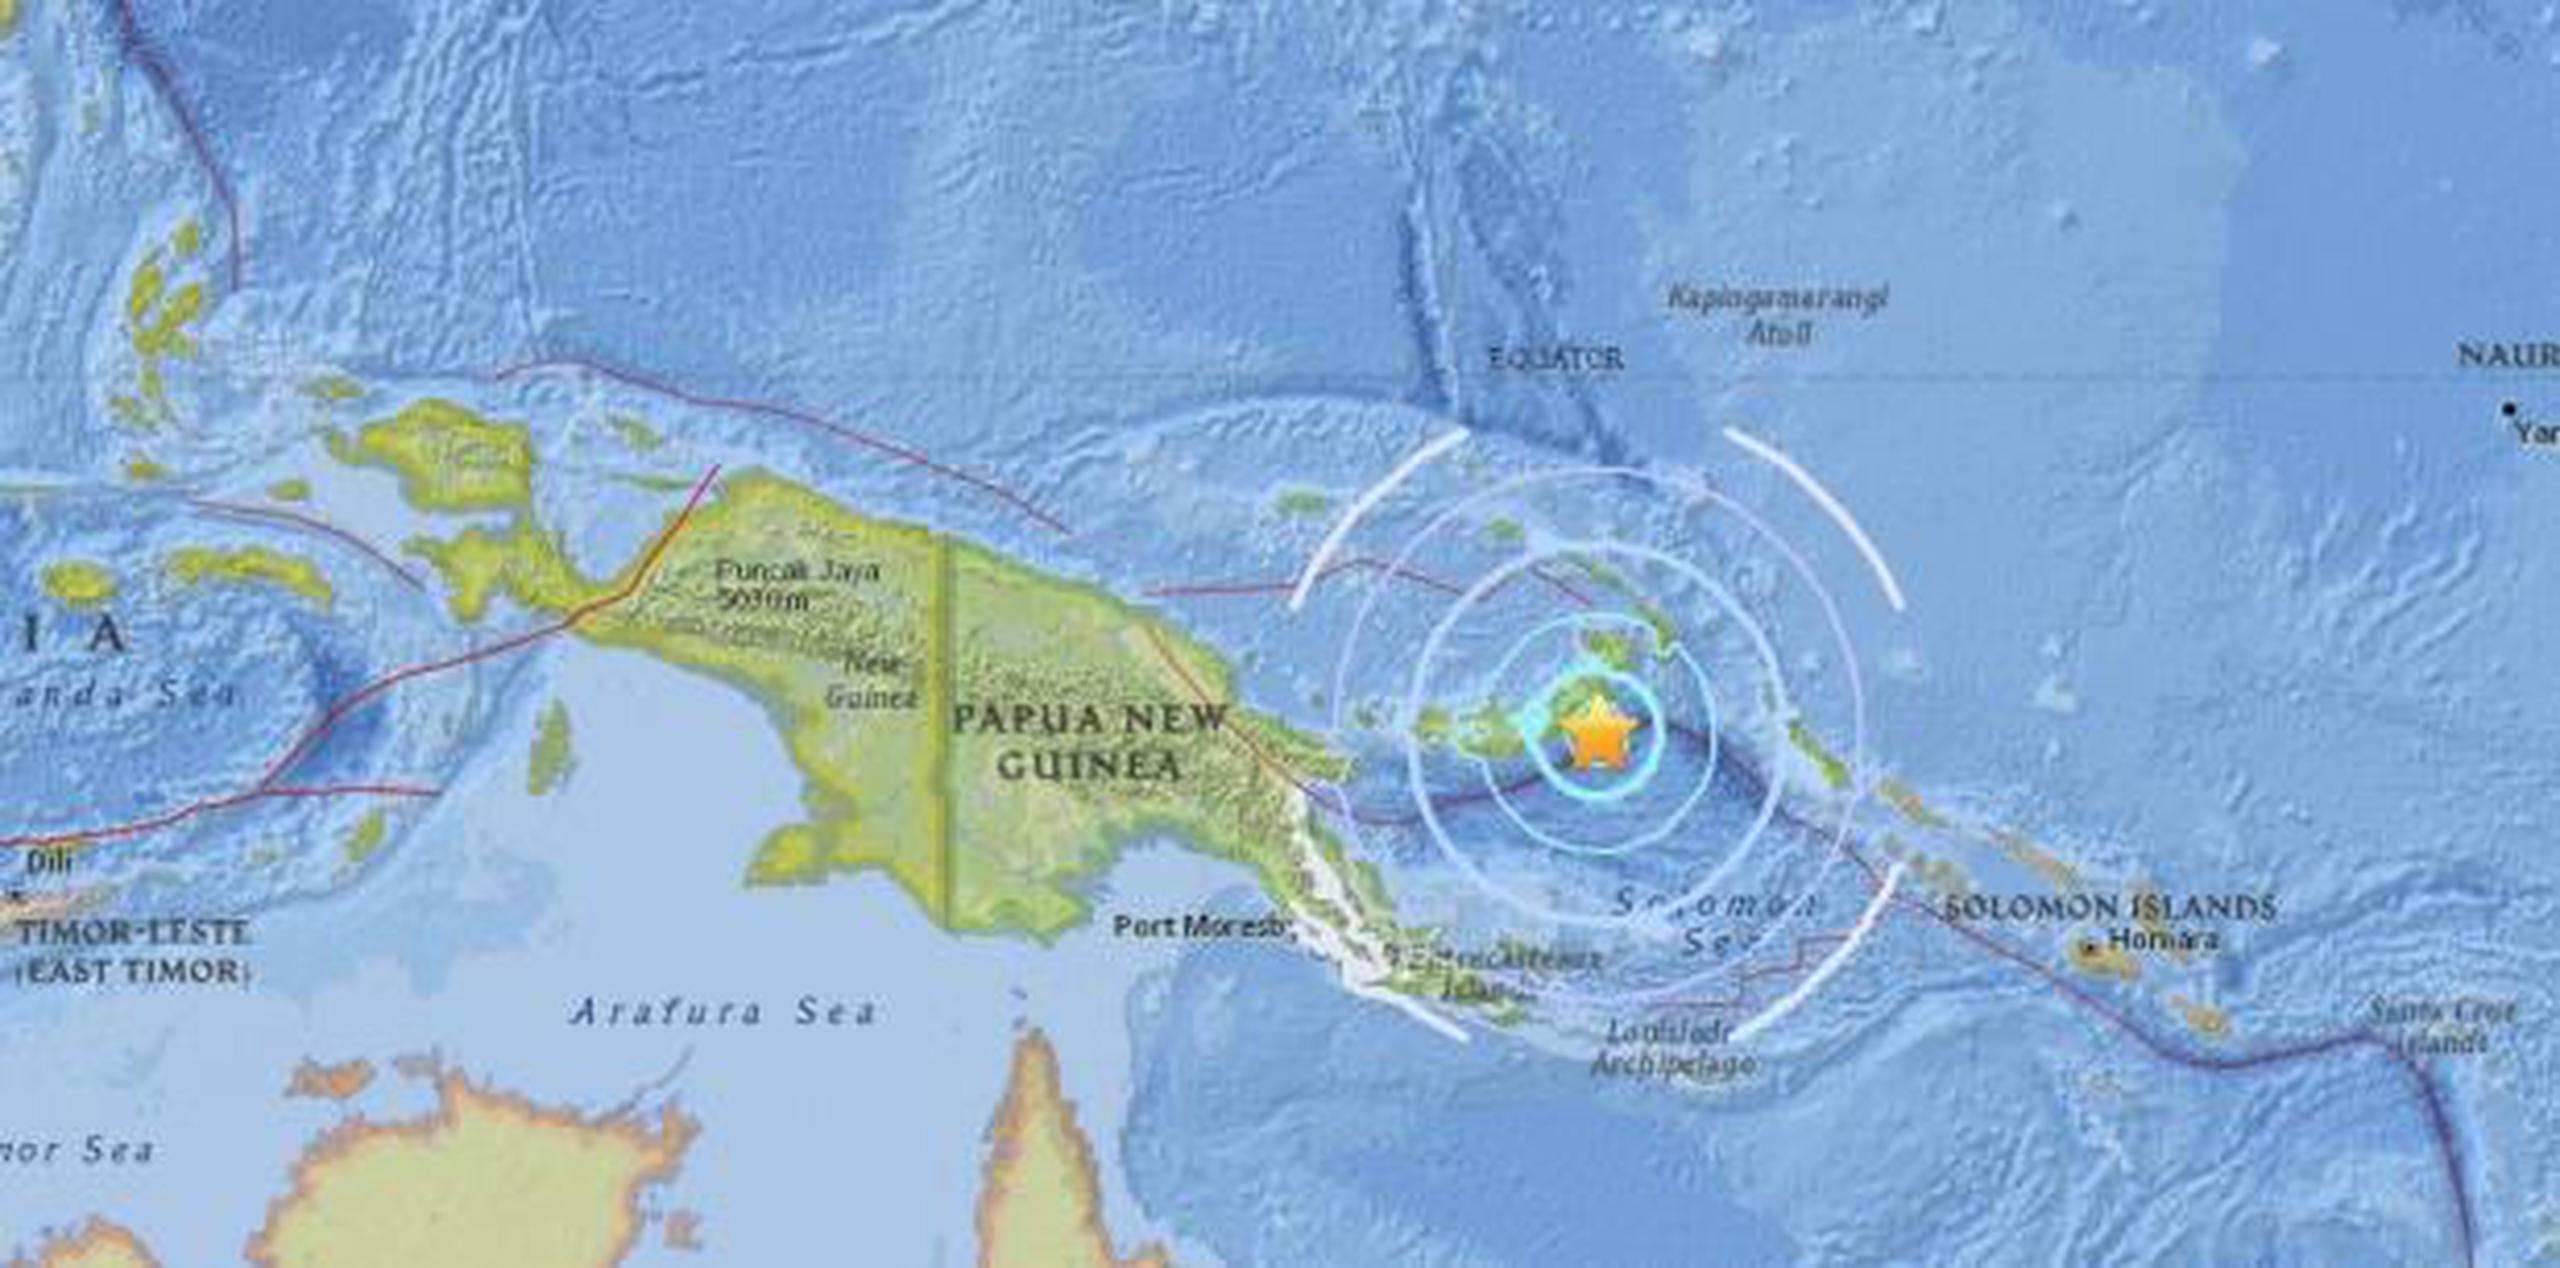 Papúa Nueva Guinea se asienta sobre el Anillo de Fuego del Pacífico, una zona de gran actividad sísmica y volcánica. (Servicio Geológico de Estados Unidos)